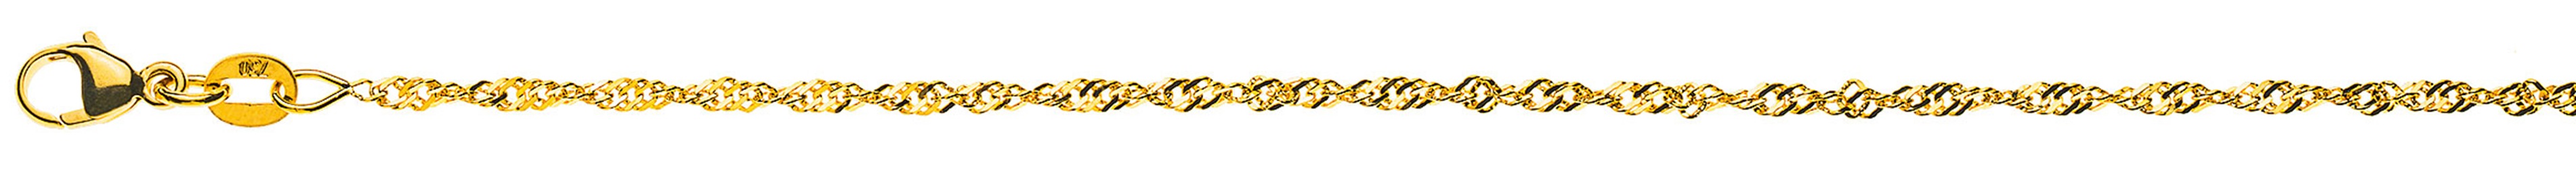 AURONOS Prestige Necklace Yellow Gold 18K Singapore Chain 50cm 1.9mm